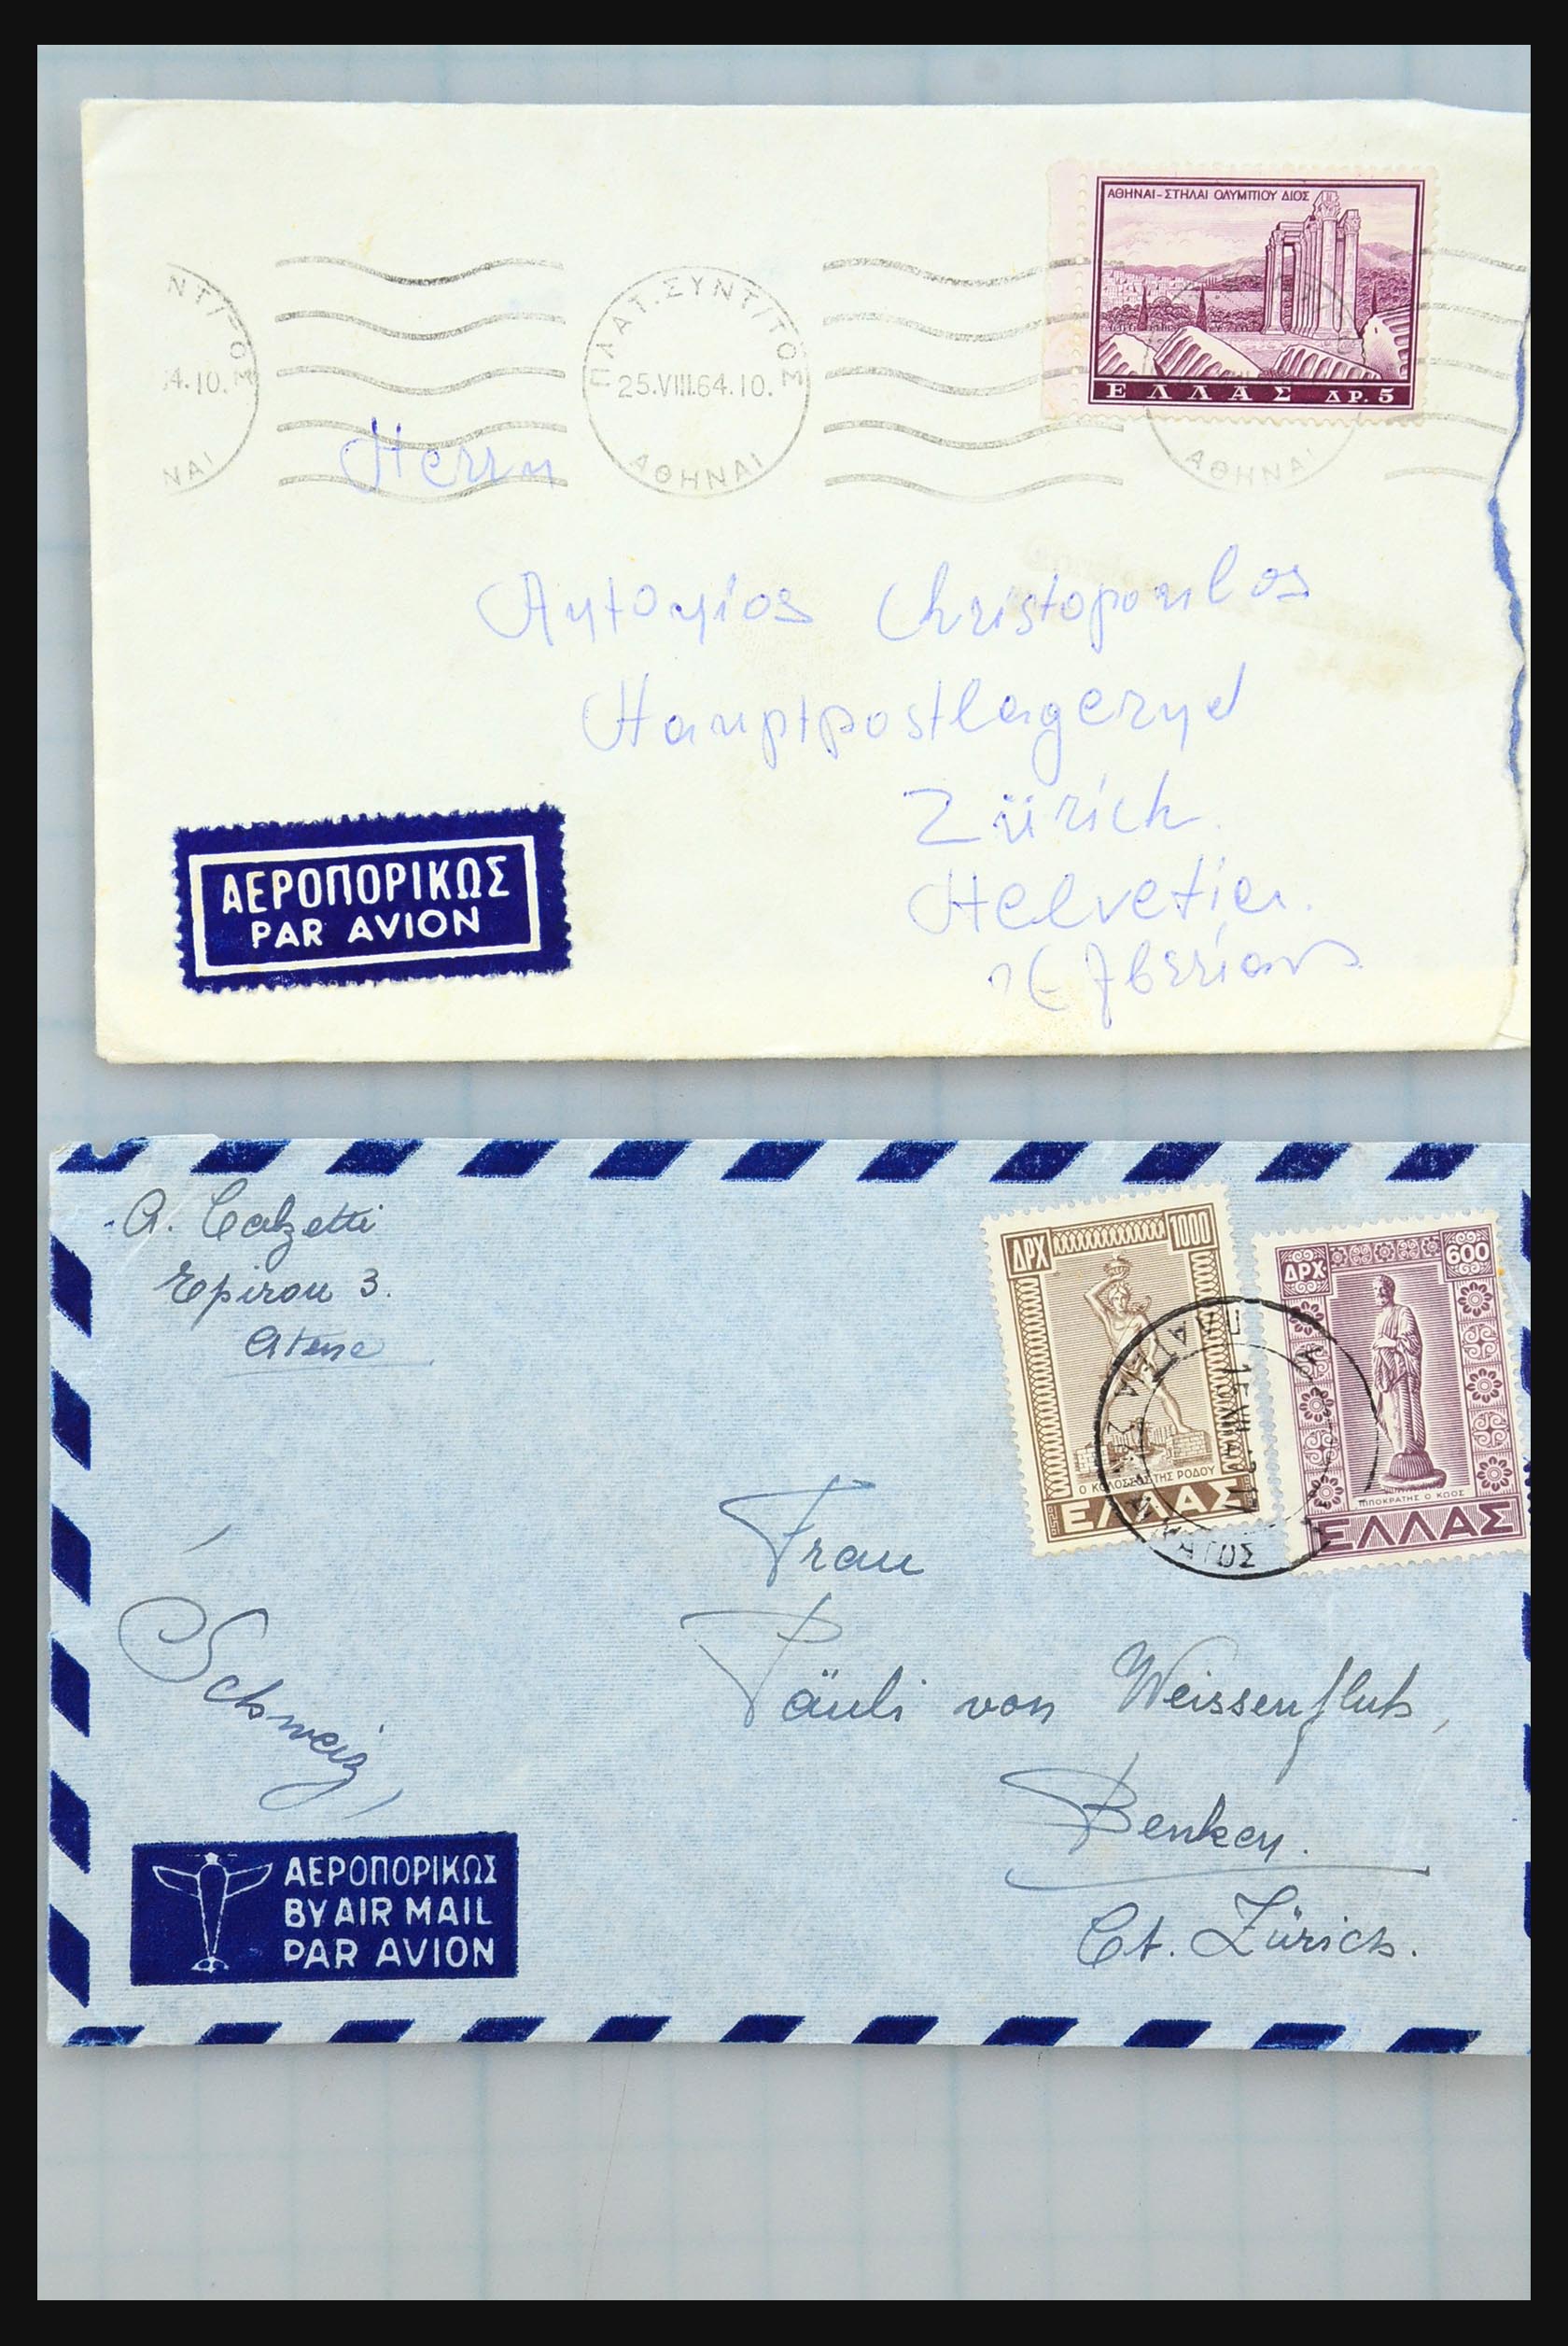 31358 112 - 31358 Portugal/Luxemburg/Griekenland brieven 1880-1960.